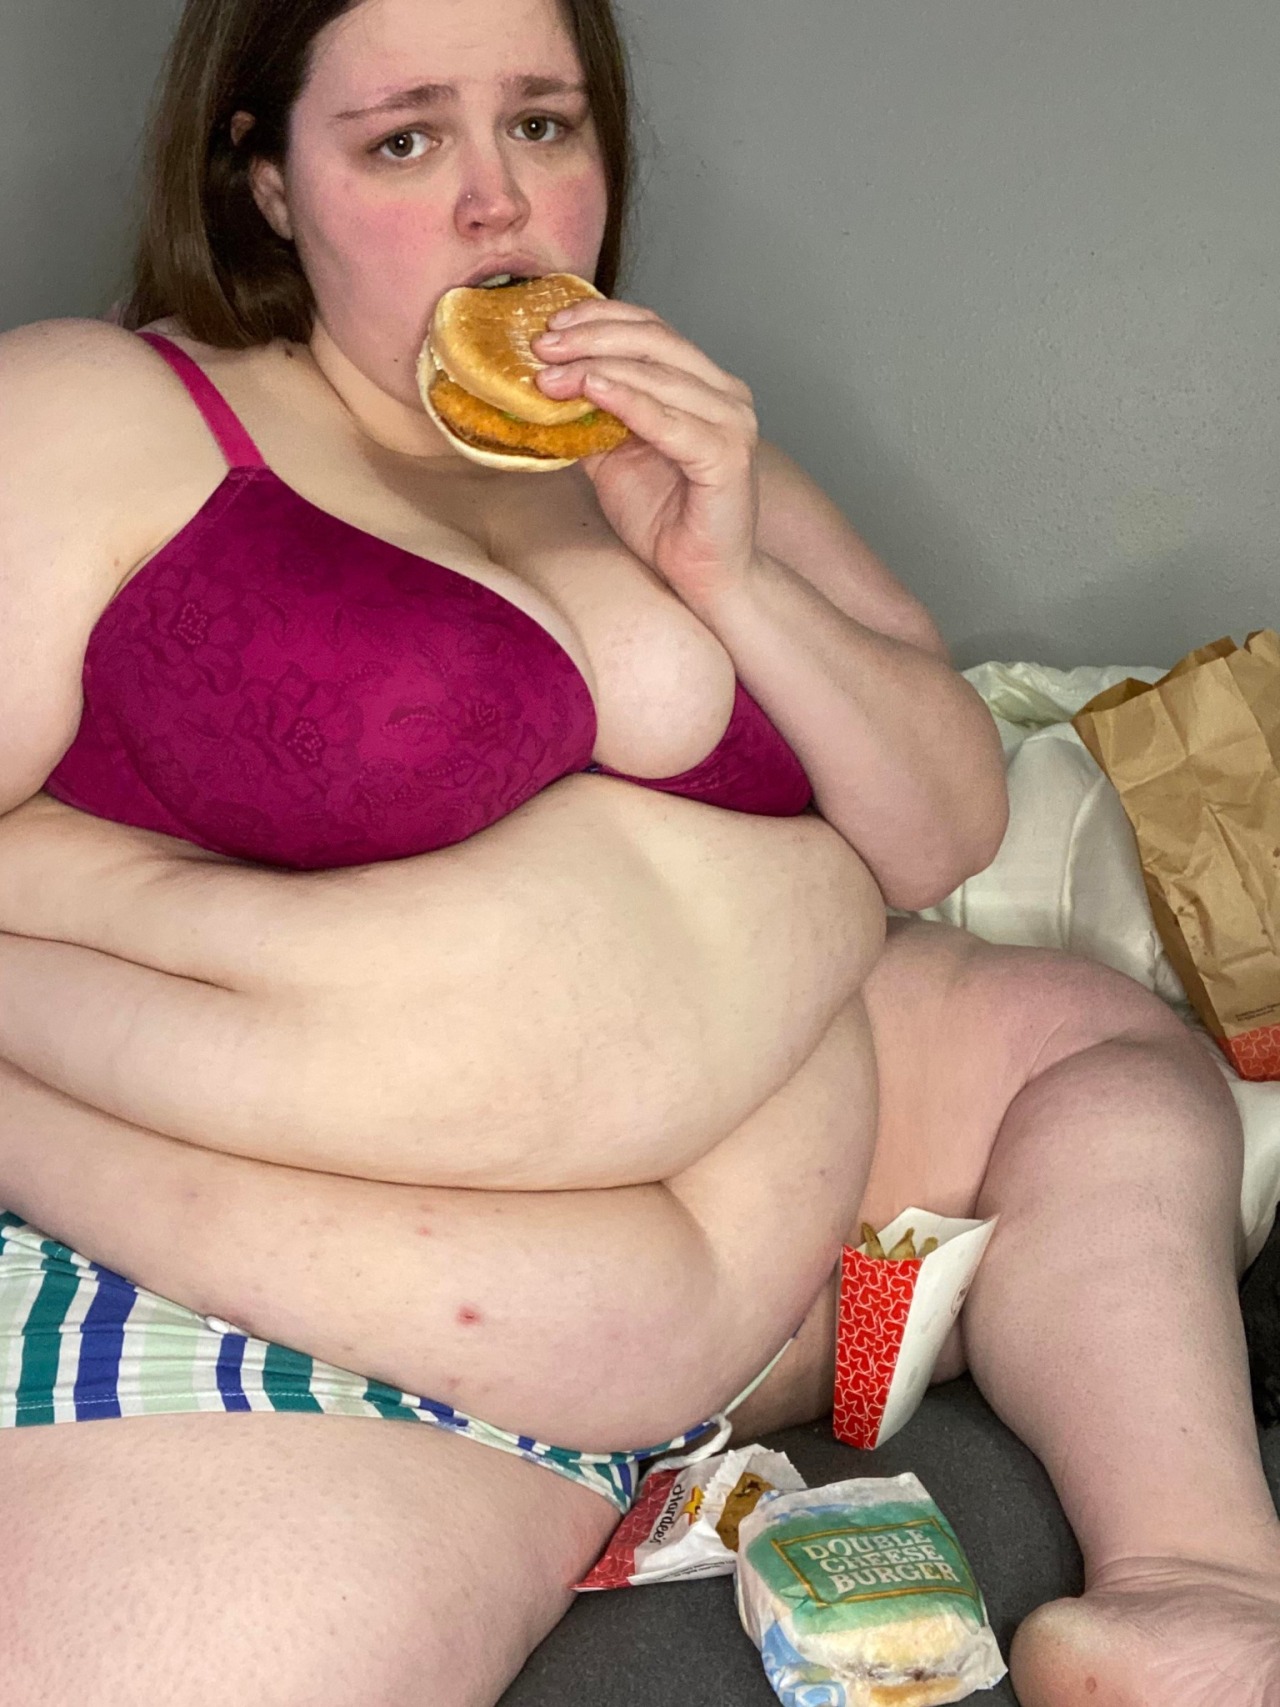 Porn photo a-frank-admirer:A big girl’s gotta eat.